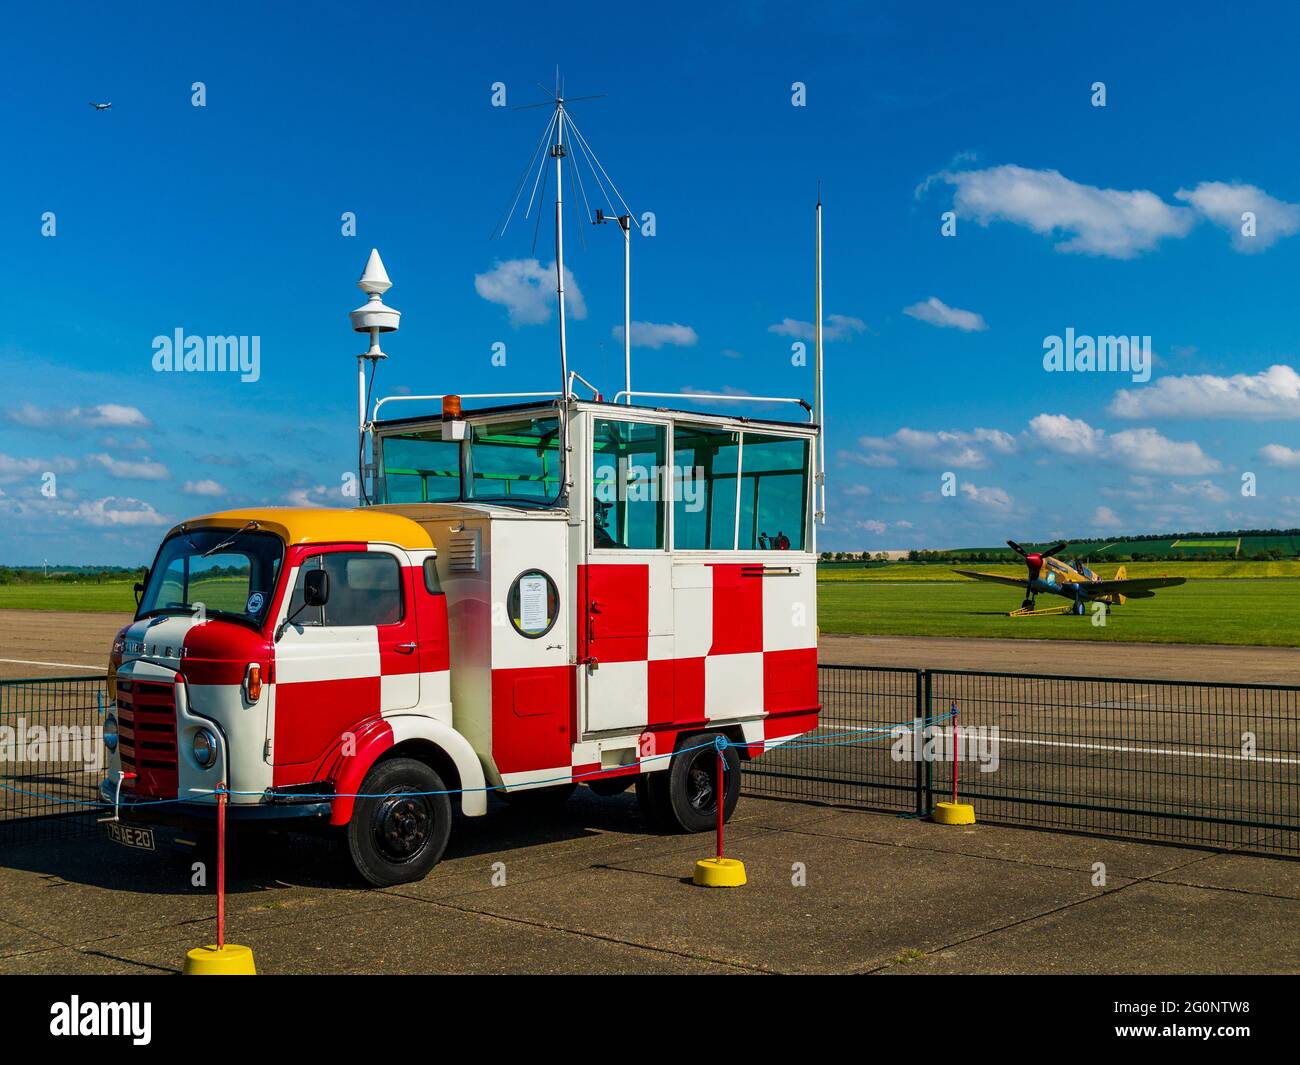 Karrier Bantam Vintage Camion de contrôle de l'aérodrome Banque D'Images